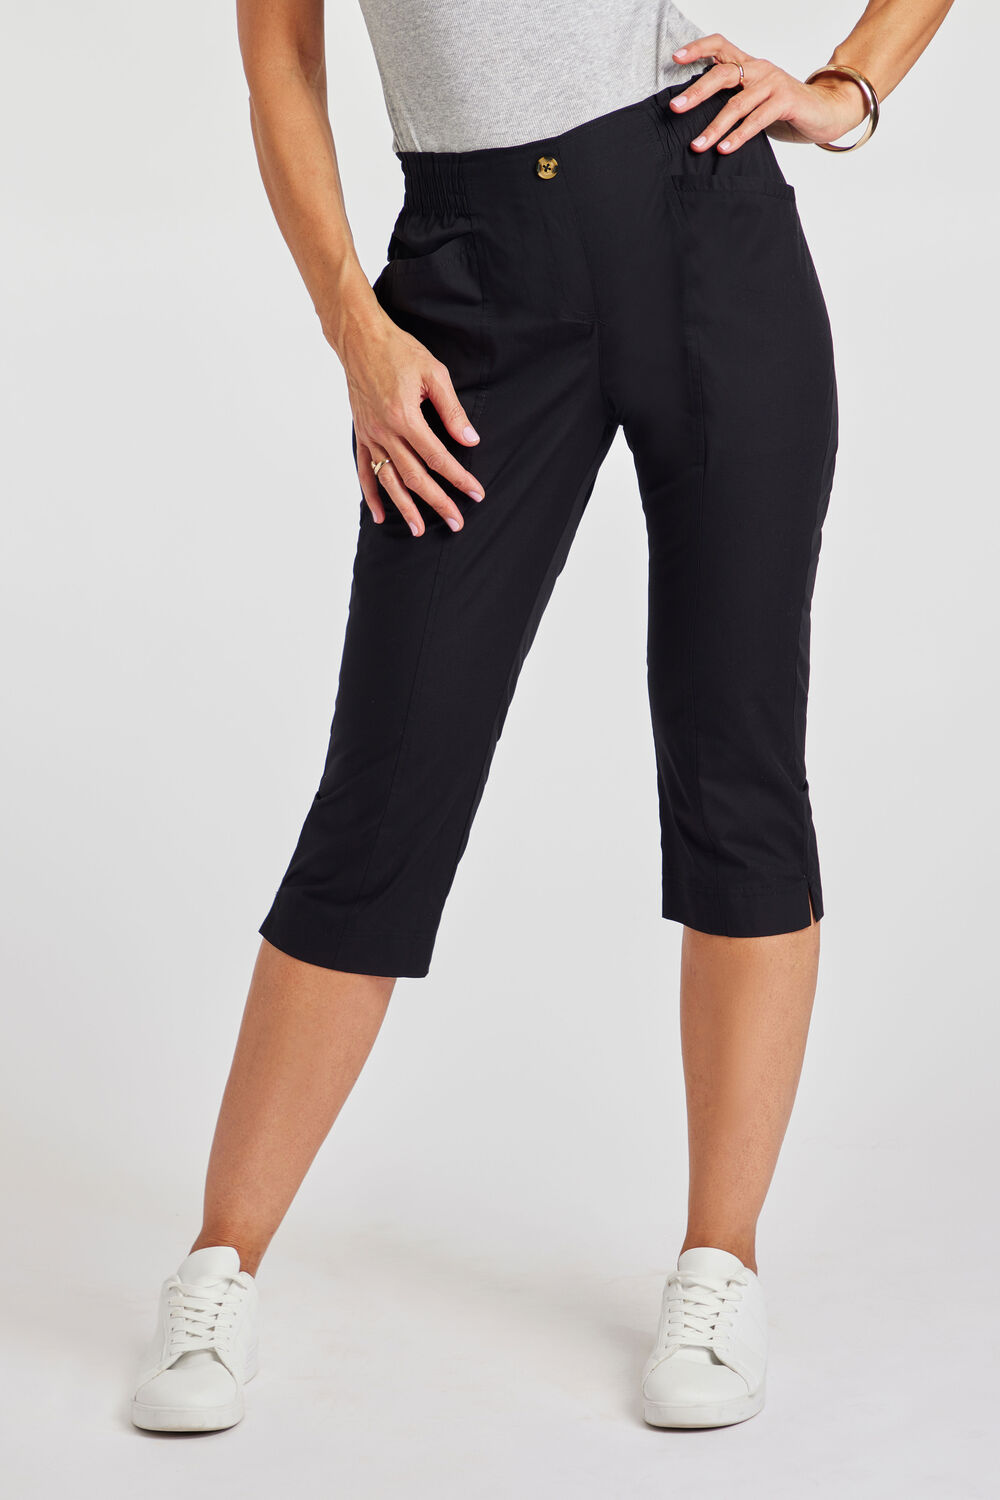 Bonmarche Ladies Black Essential Elastic Back Crop Trousers, Size: 18